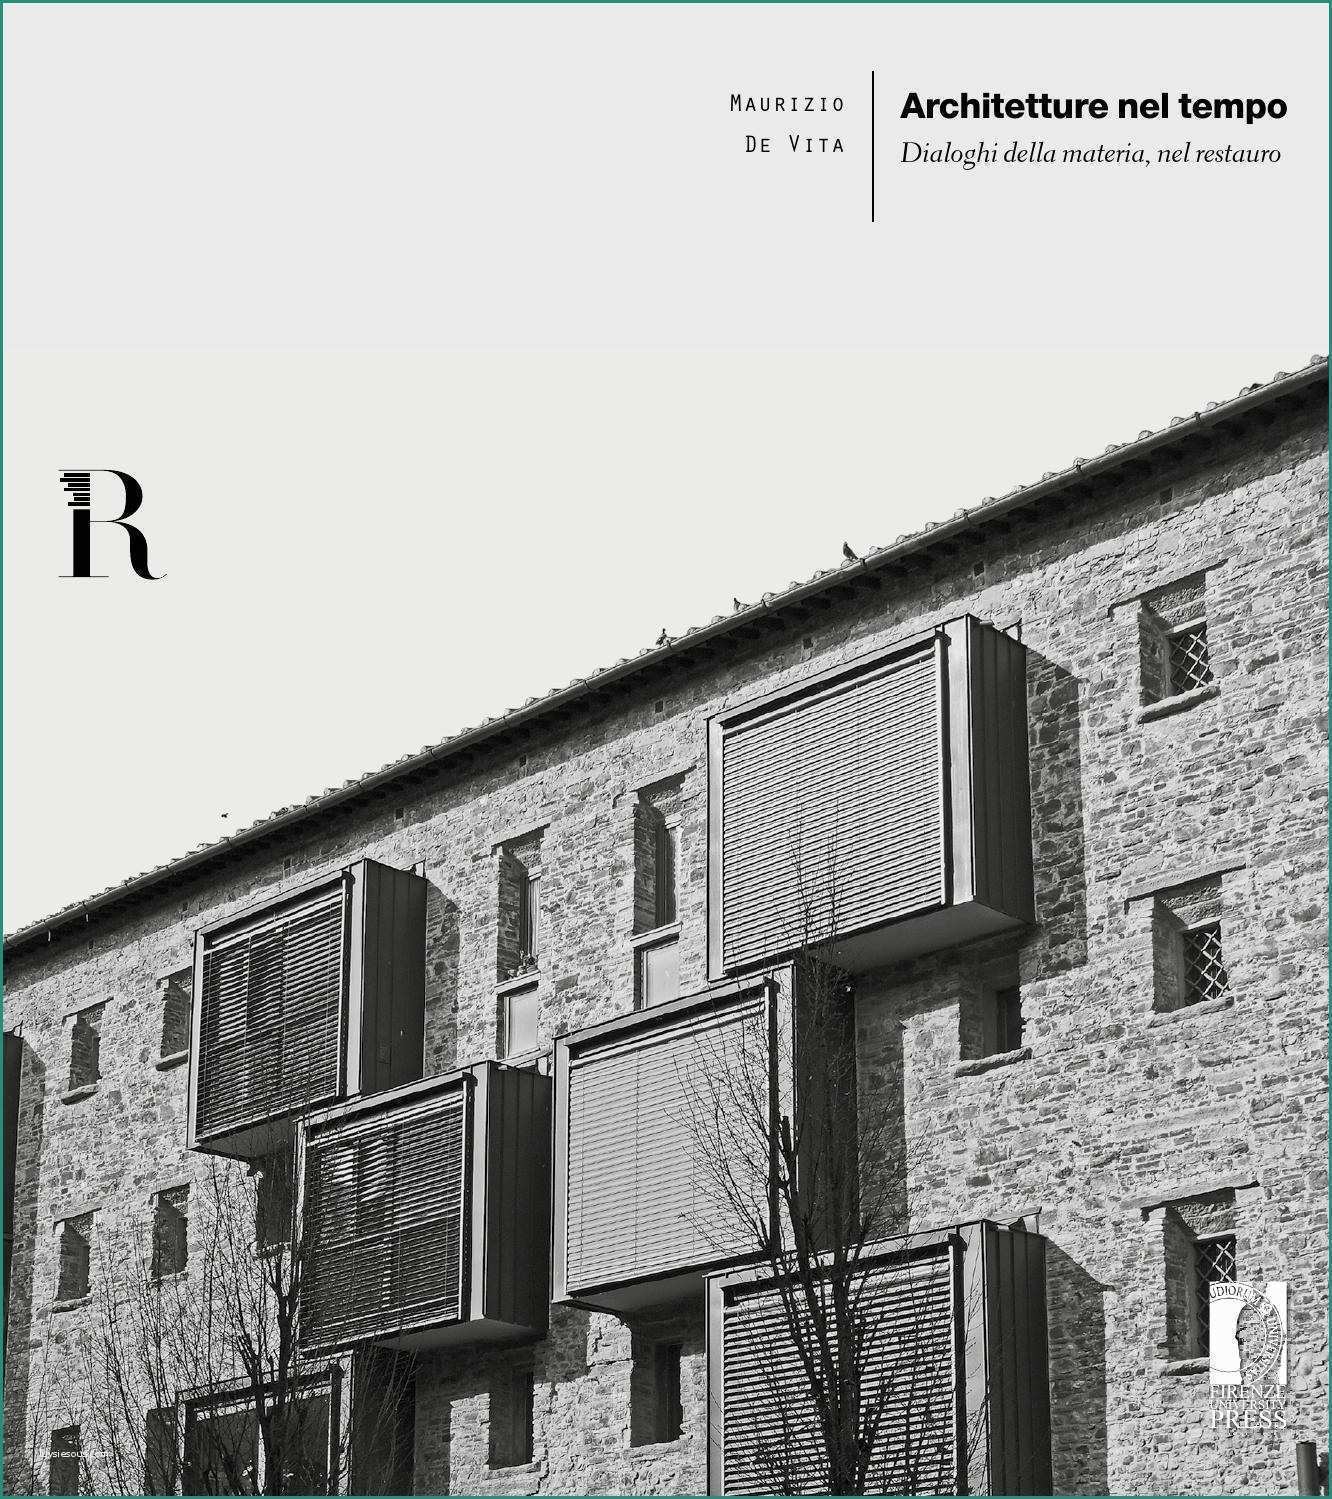 Rivestimenti Facciate Esterne Moderne E Architetture Nel Tempo Maurizio De Vita by Dida issuu